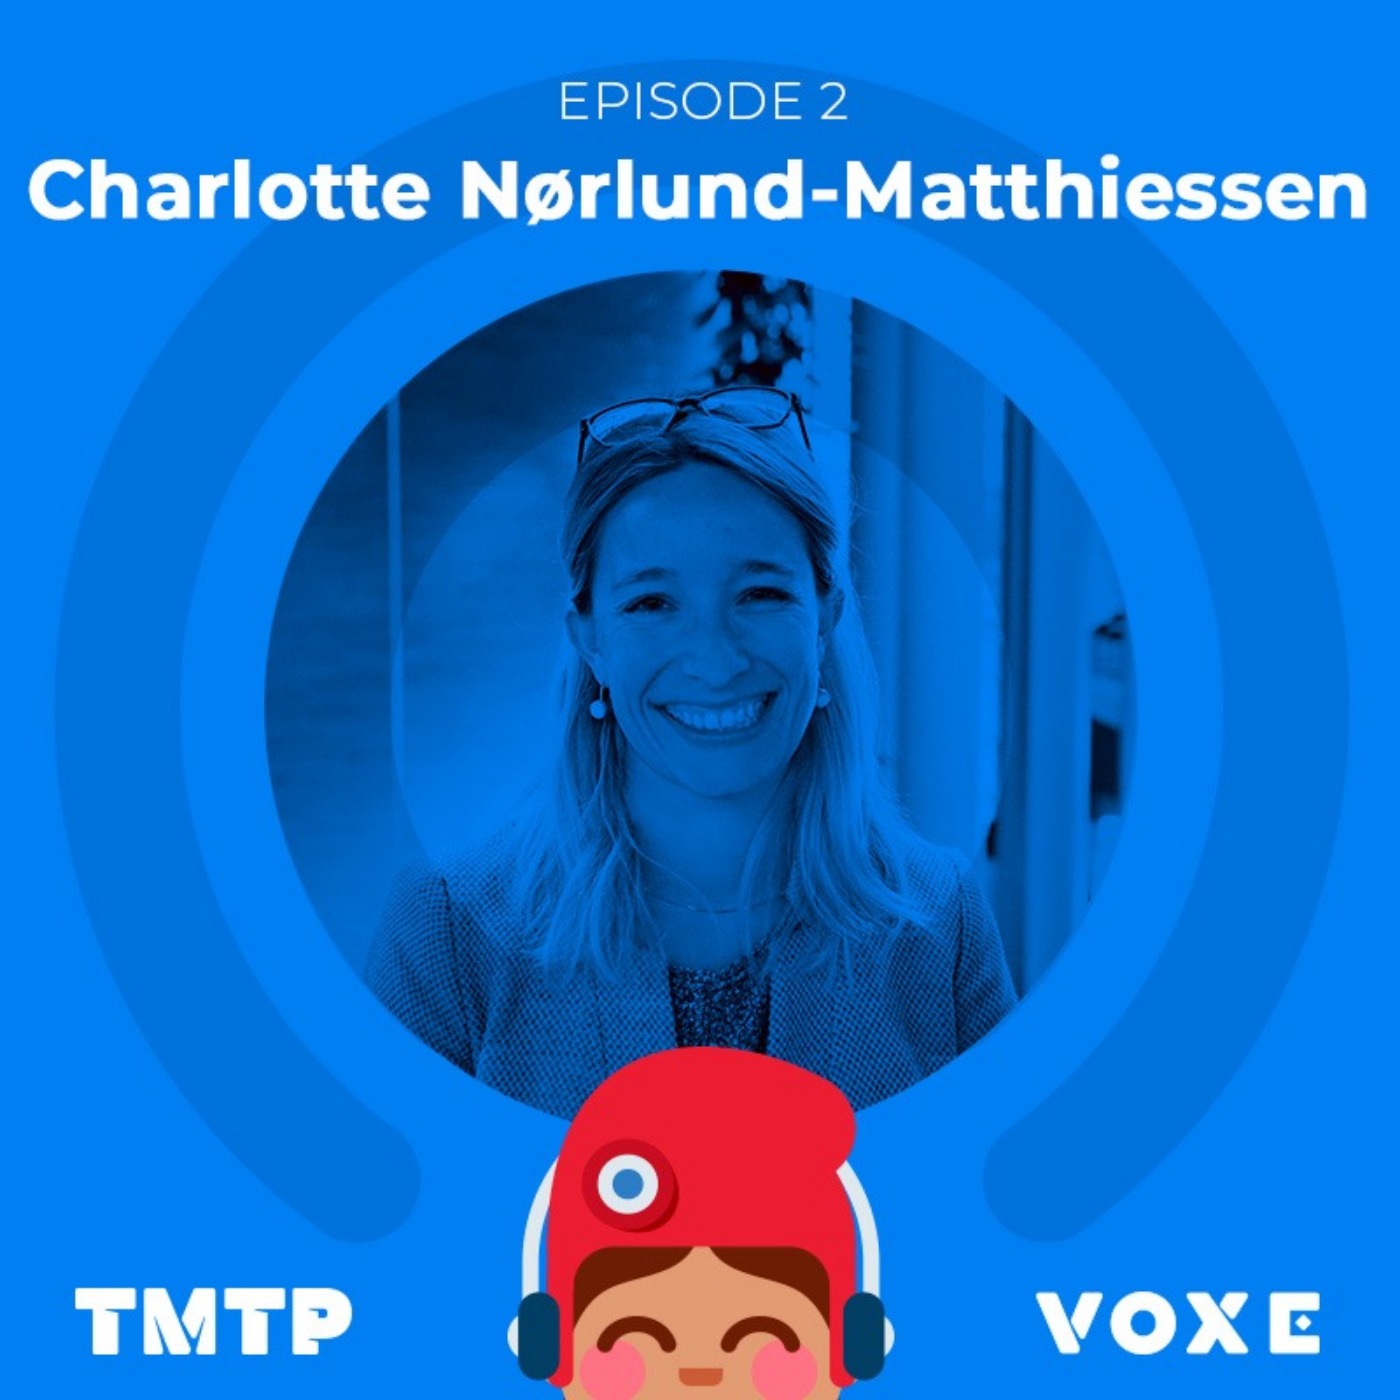 Charlotte Nørlund-Matthiessen : Toi-même tu peux permettre au citoyen de proposer des initiatives pour l'Europe